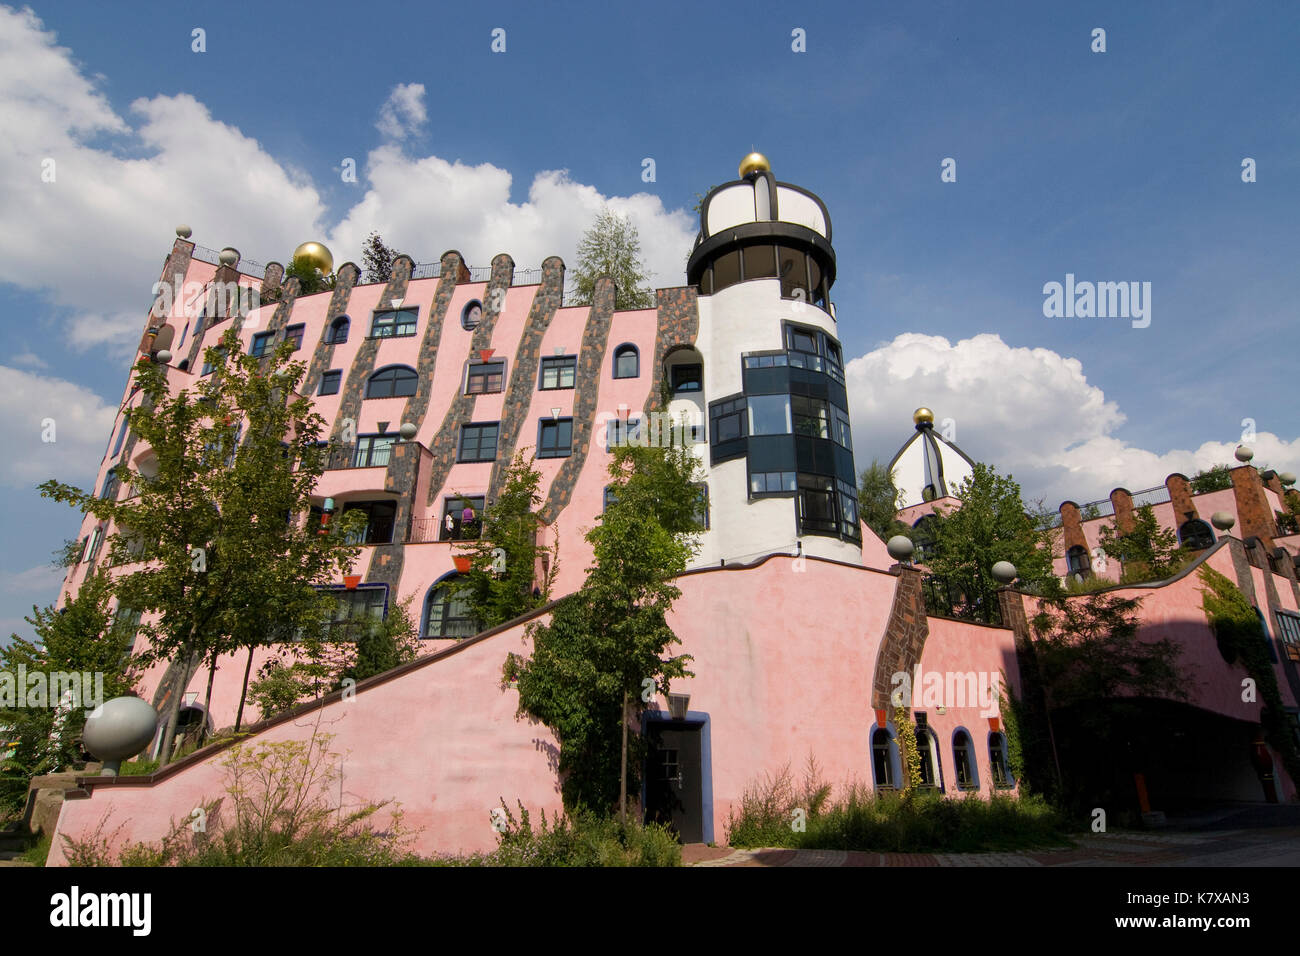 Die 'Grüne Zitadelle' a Magedeburg (Hundertwasser-Architektur) Foto Stock